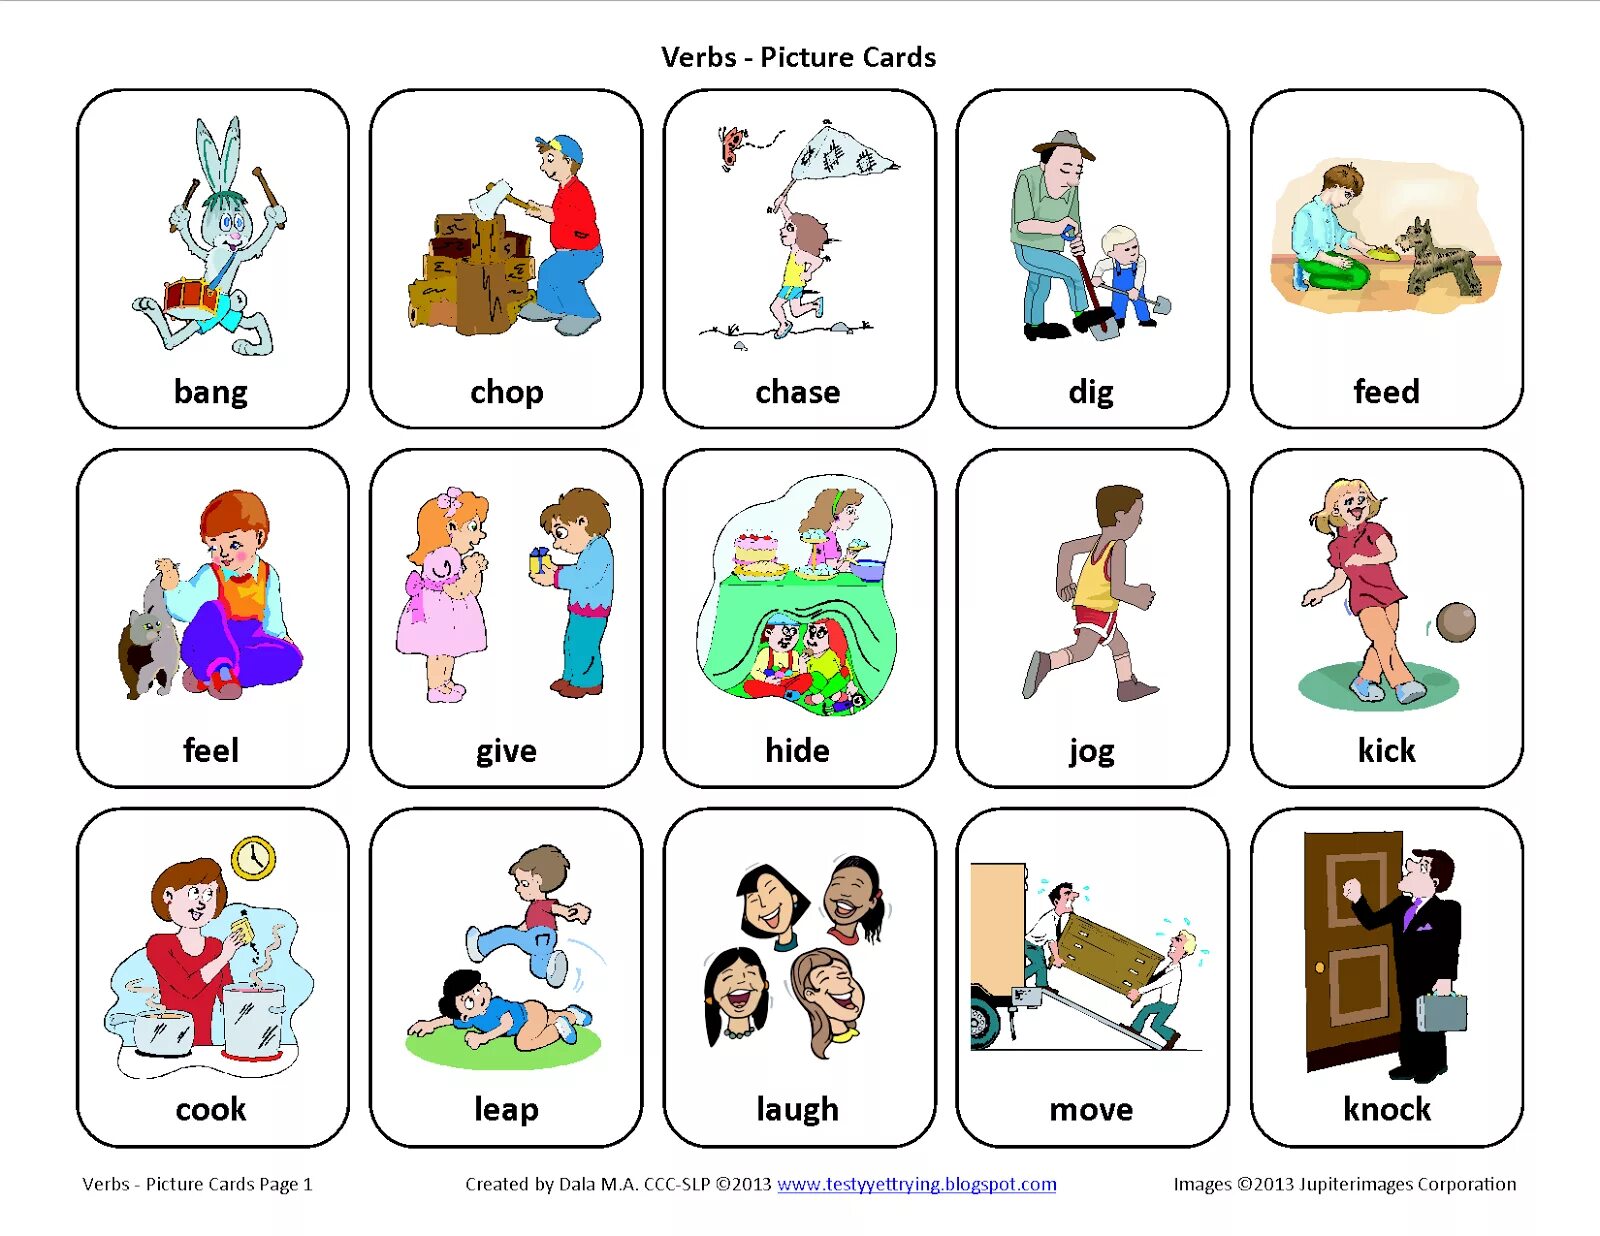 My moving words. Action verbs в английском. Карточки Actions английский. Карточки на английском для детей. Карточки с действиями на английском.